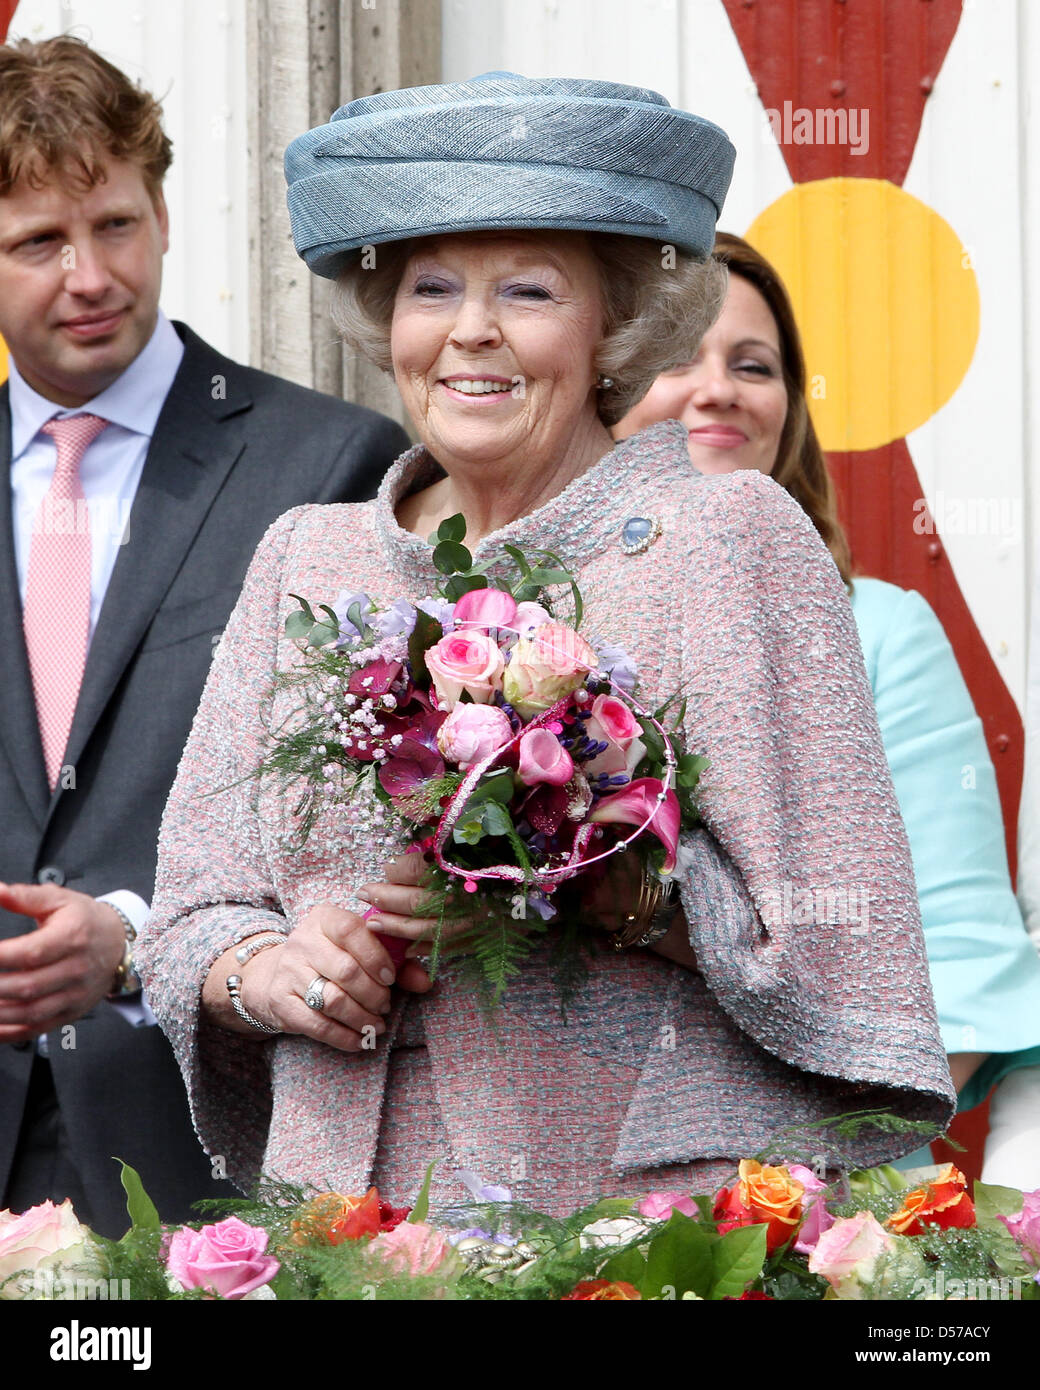 Queen Beatrix of the Netherlands attends the Queensday (Koninginnedag) celebrations in Wemeldinge, The Netherlands, 30 April 2010. Photo: Patrick van Katwijk Stock Photo